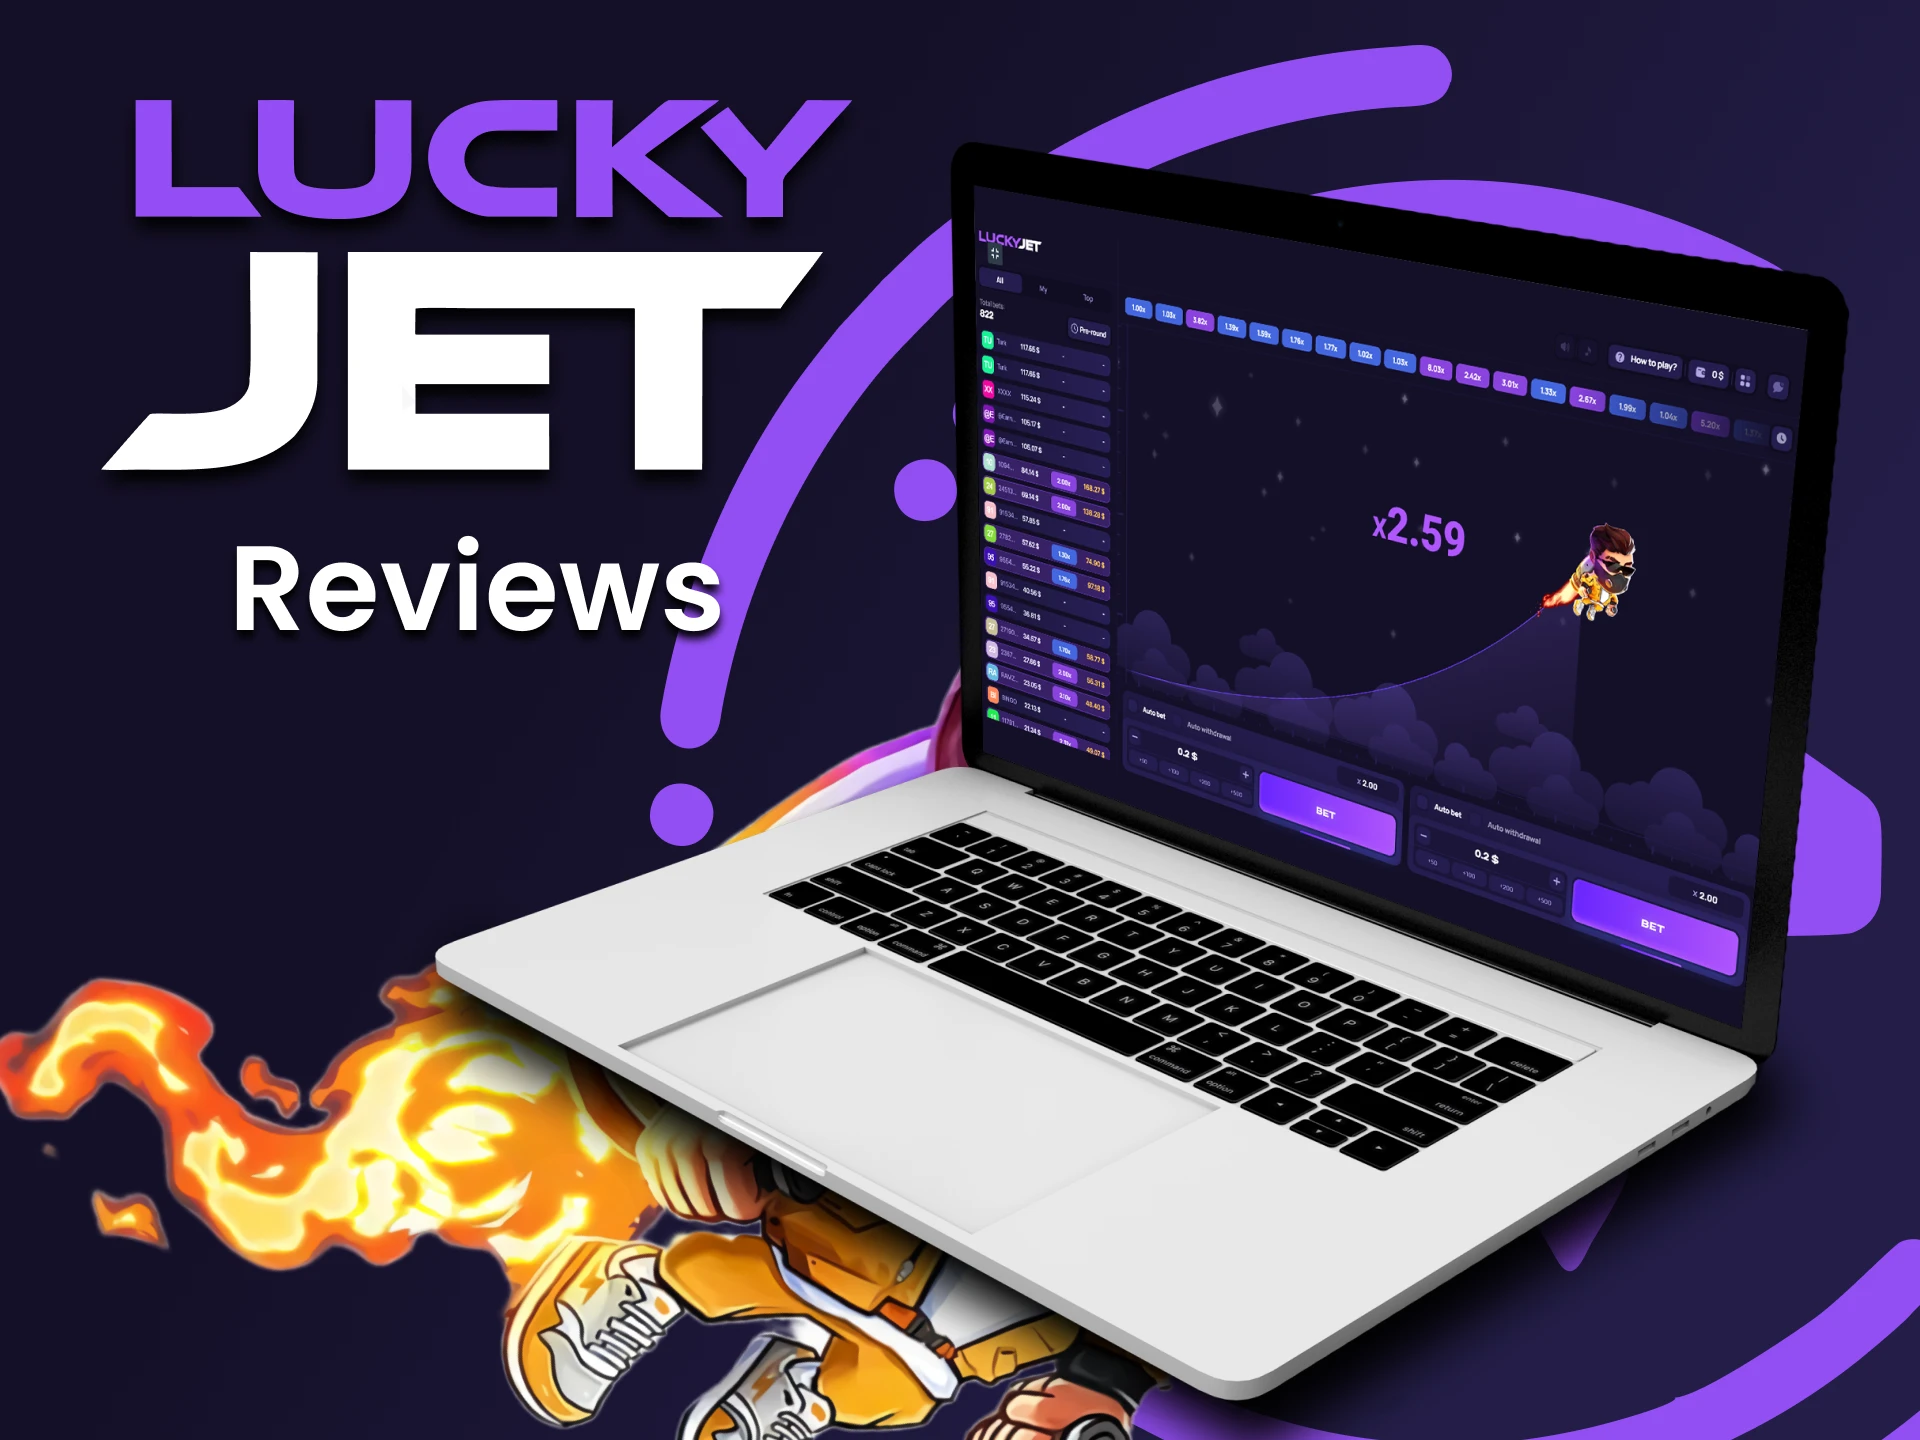 Comparte tu opinión y averigua qué piensan otros jugadores del juego Lucky Jet.